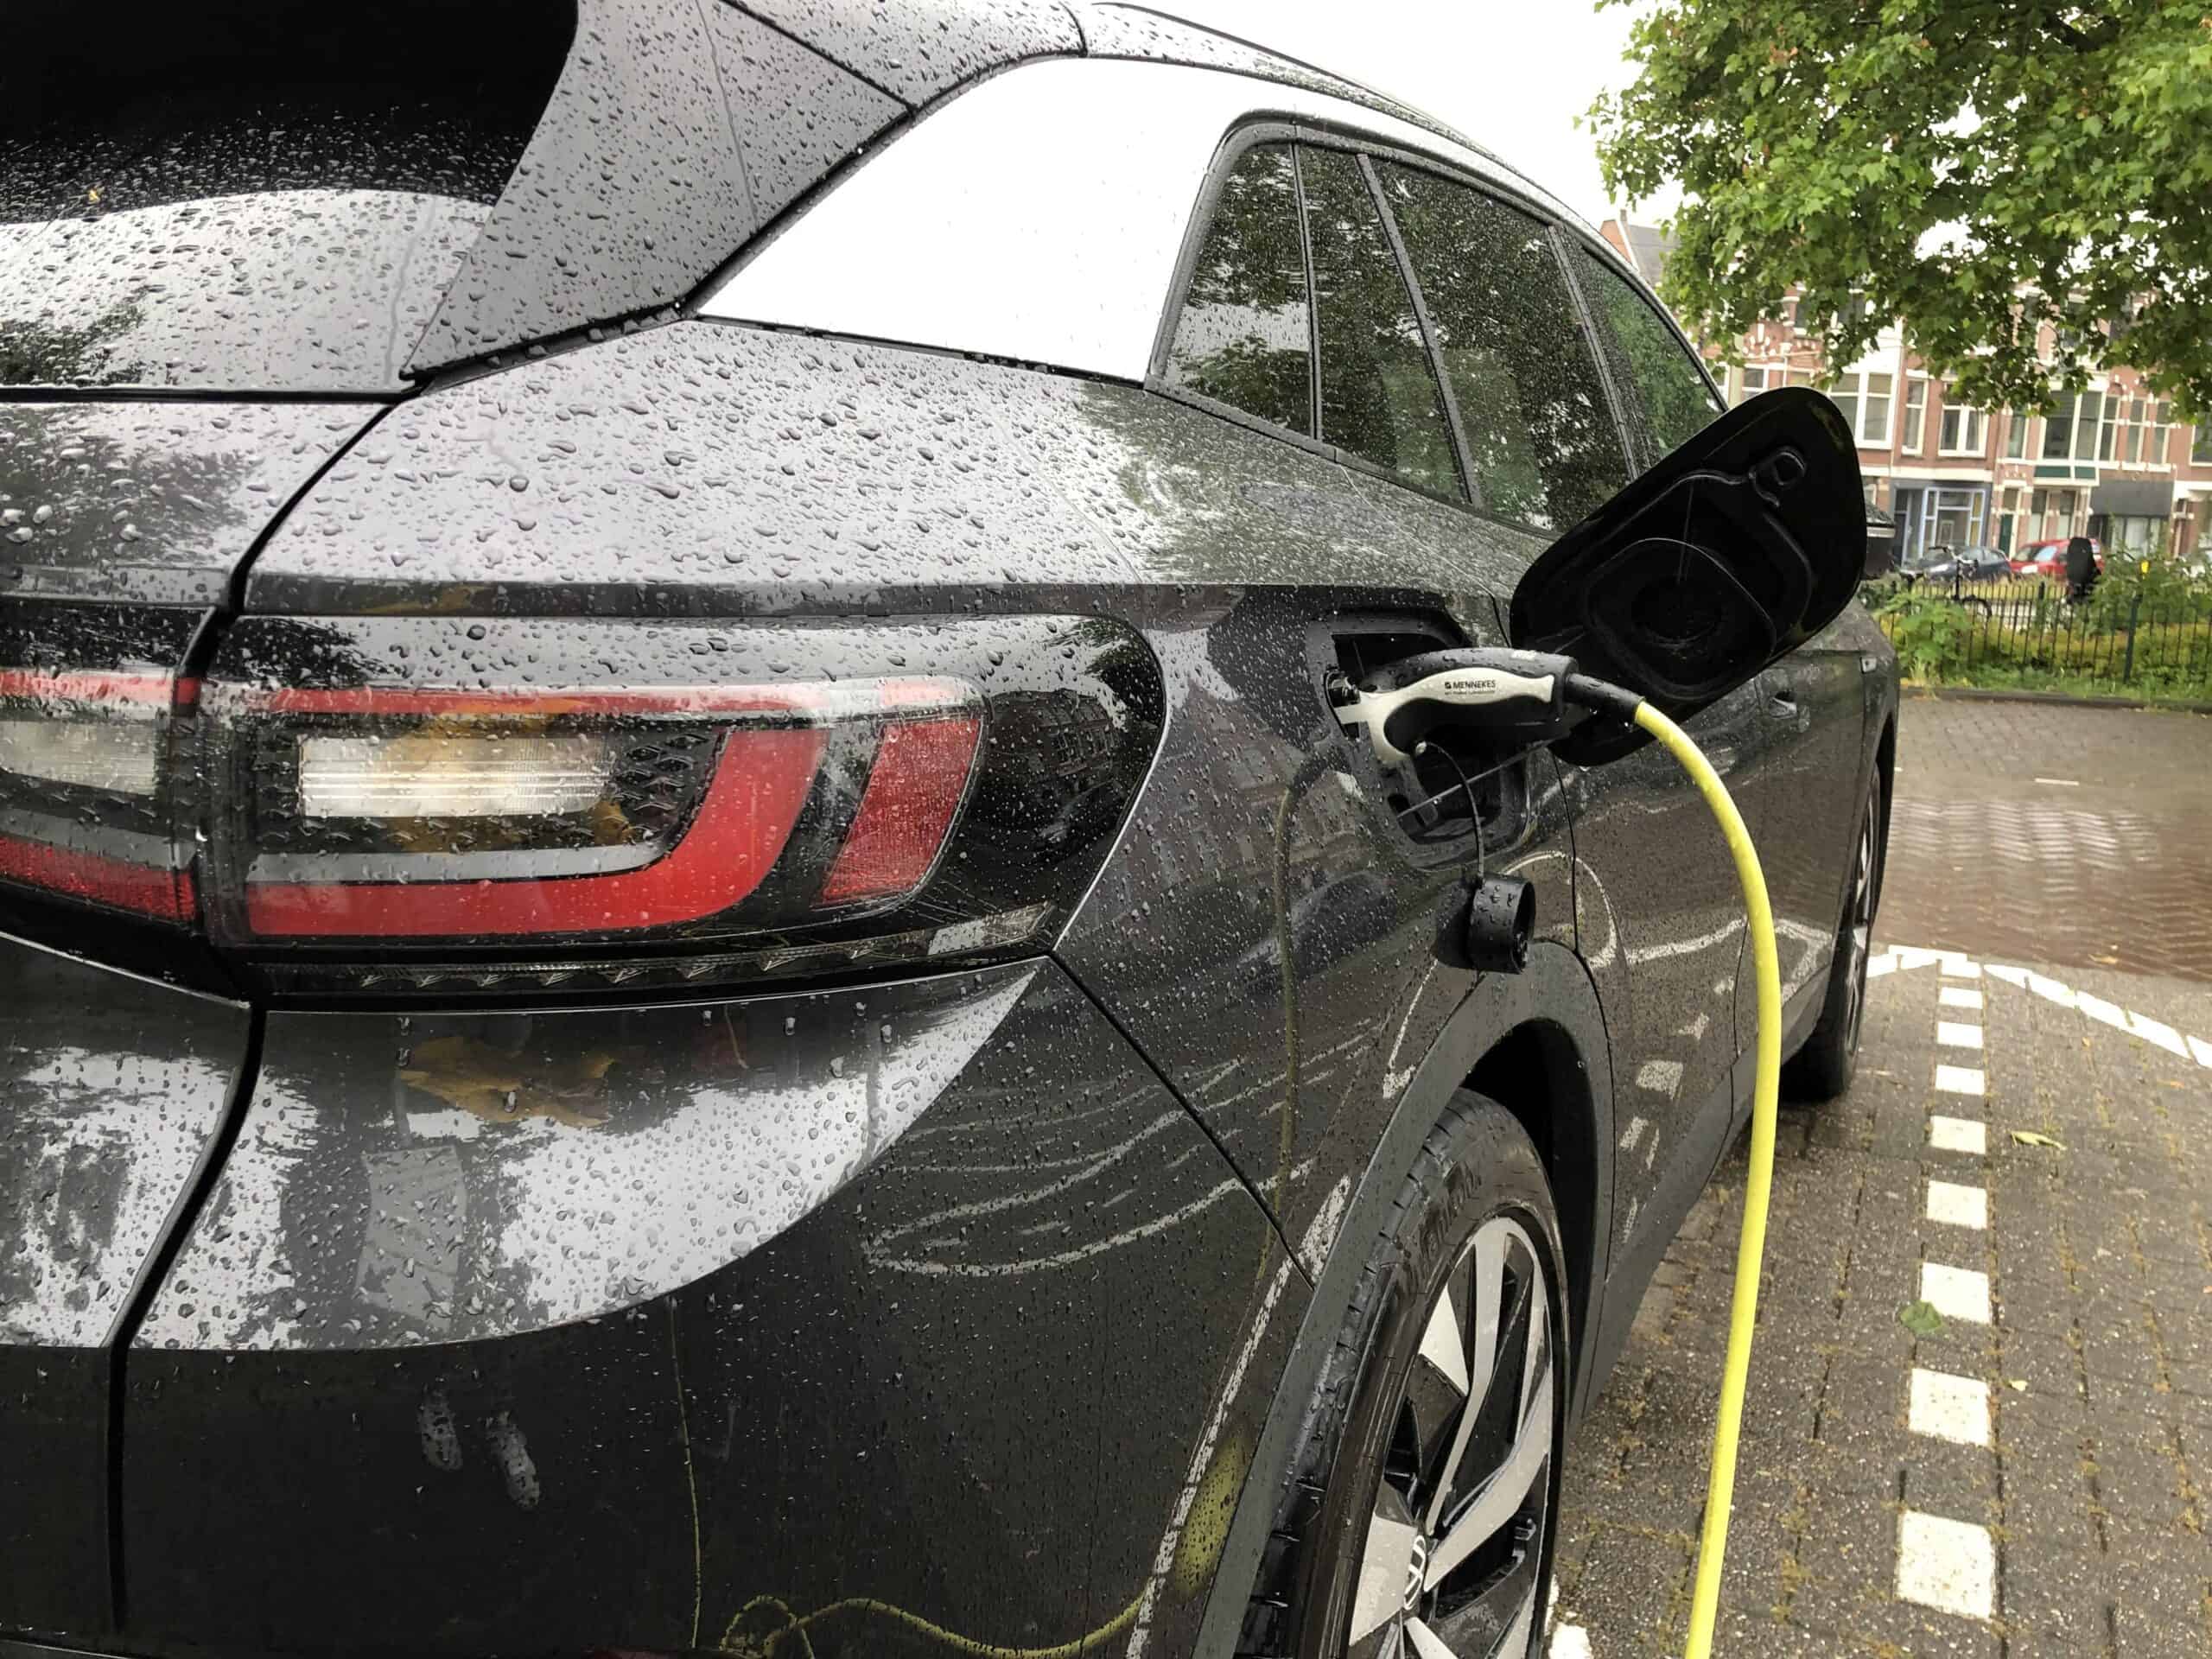 Aufladen eines Elektroautos im Regen - ist das sicher?